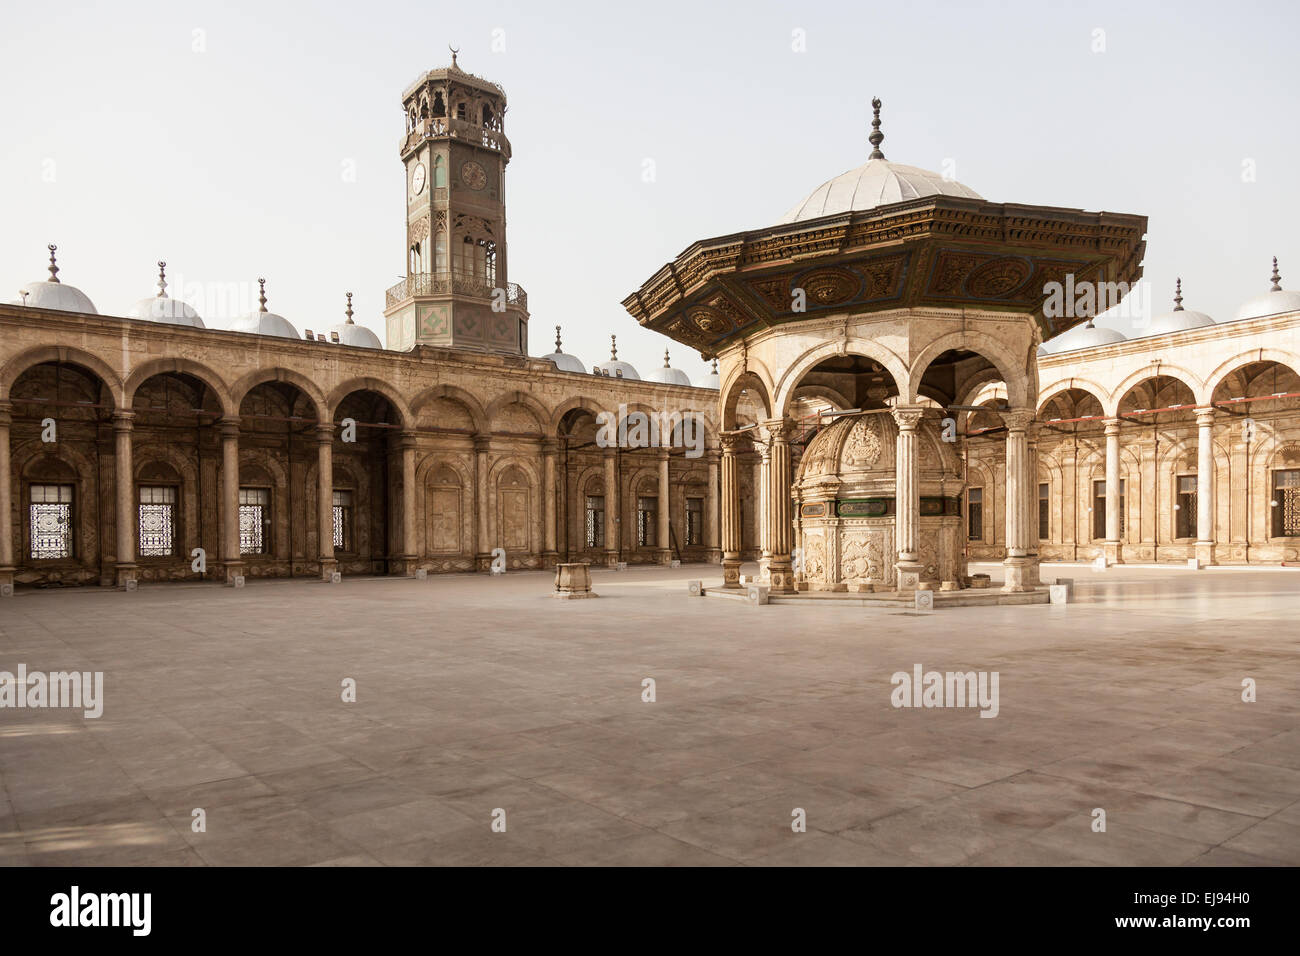 La moschea di alabastro Cittadella del Cairo in Egitto Foto Stock